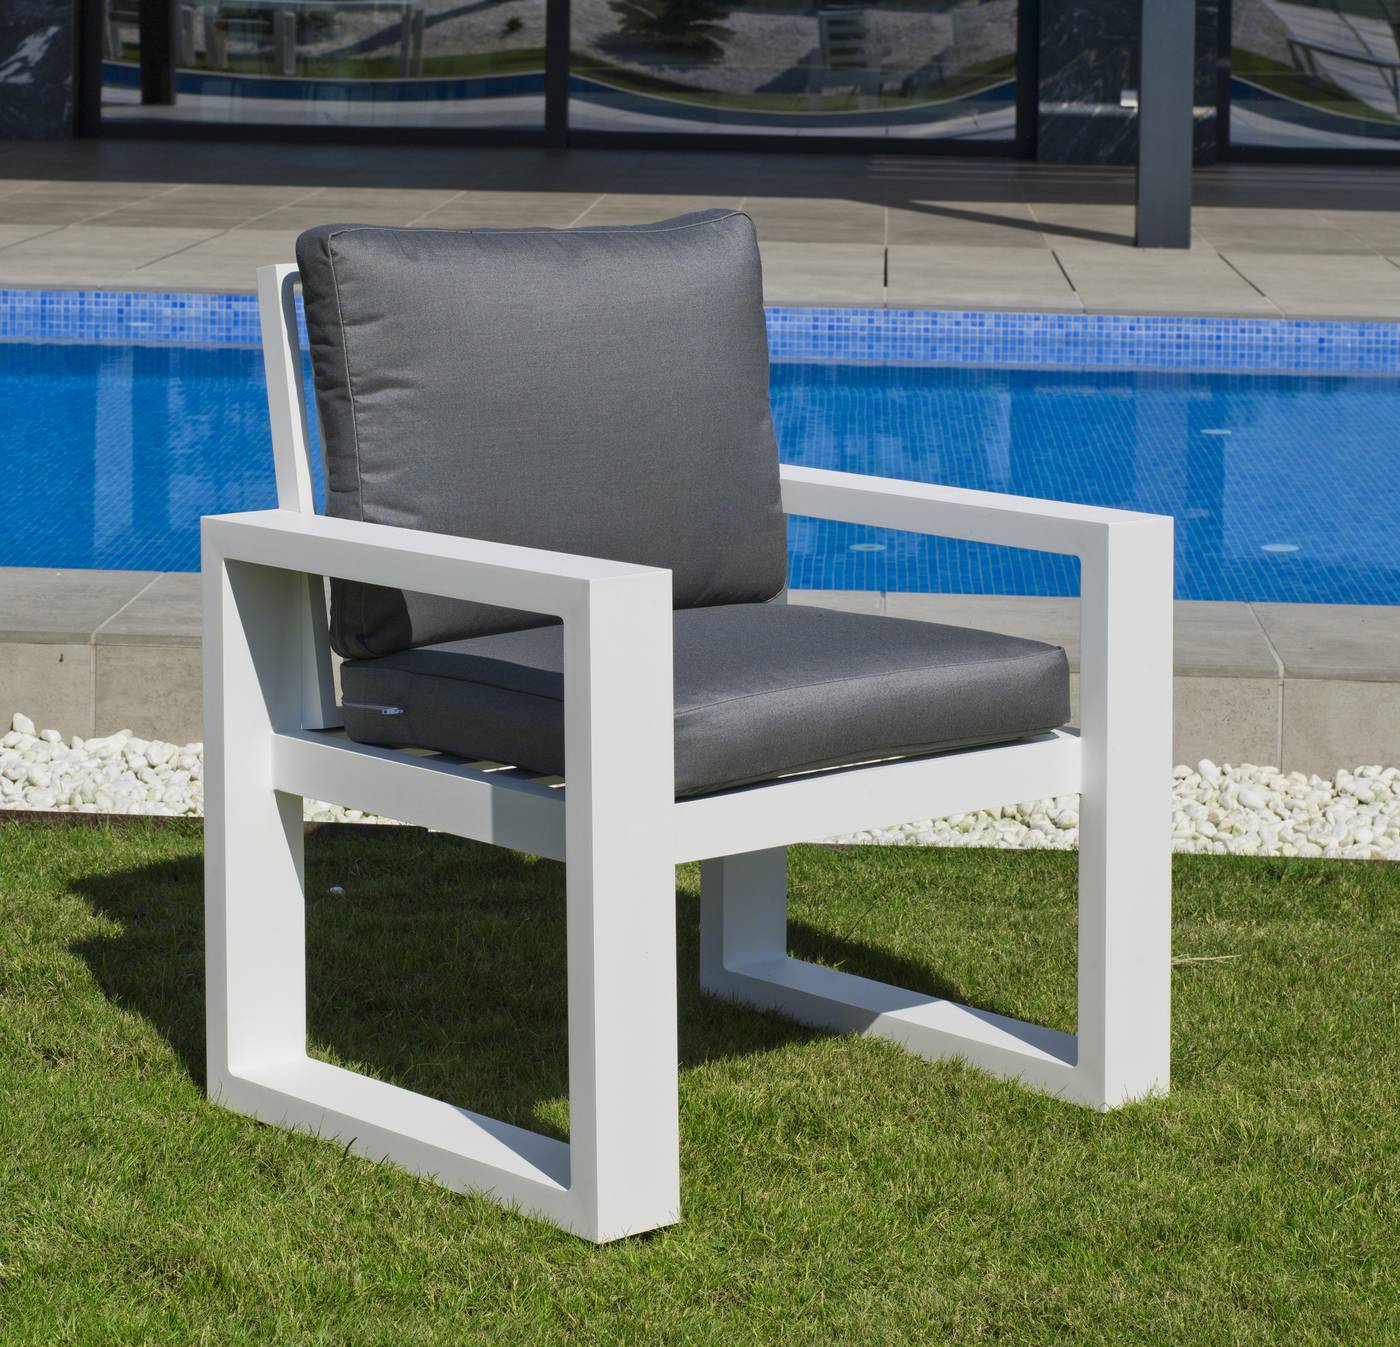 Lujoso sillón de comedor para jardín o terraza. 100% aluminio color blanco, antracita o champagne.